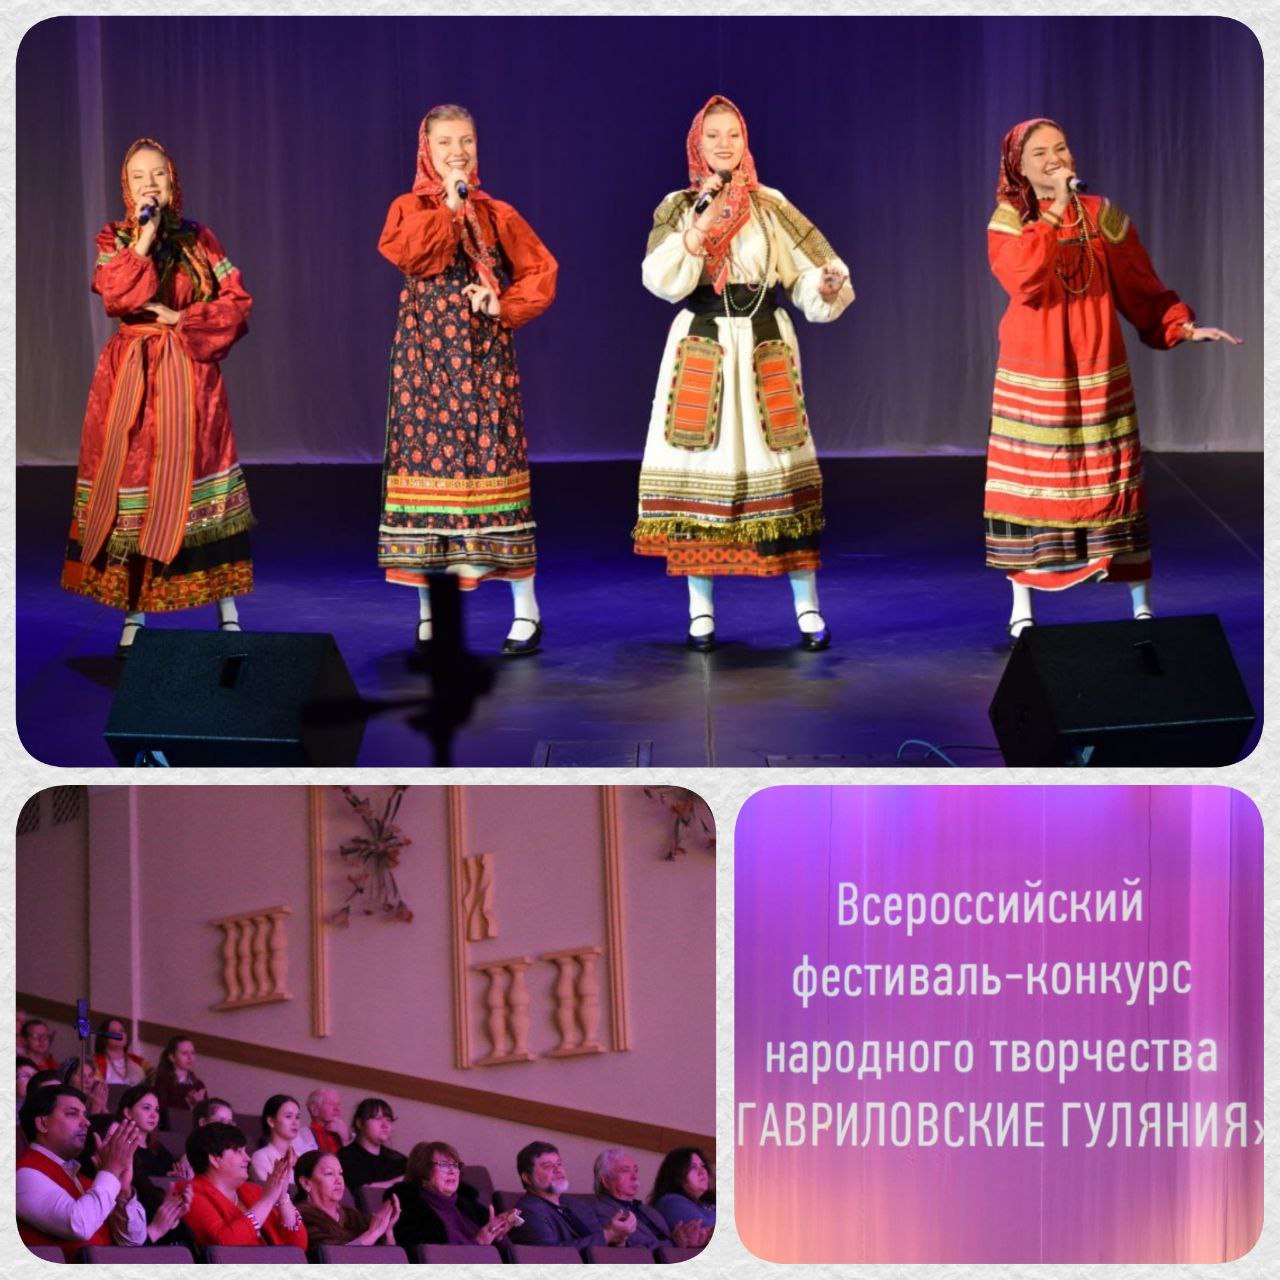 14 октября состоялся наш традиционный Всероссийский фестиваль-конкурс народного творчества «ГАВРИЛОВСКИЕ ГУЛЯНИЯ»!